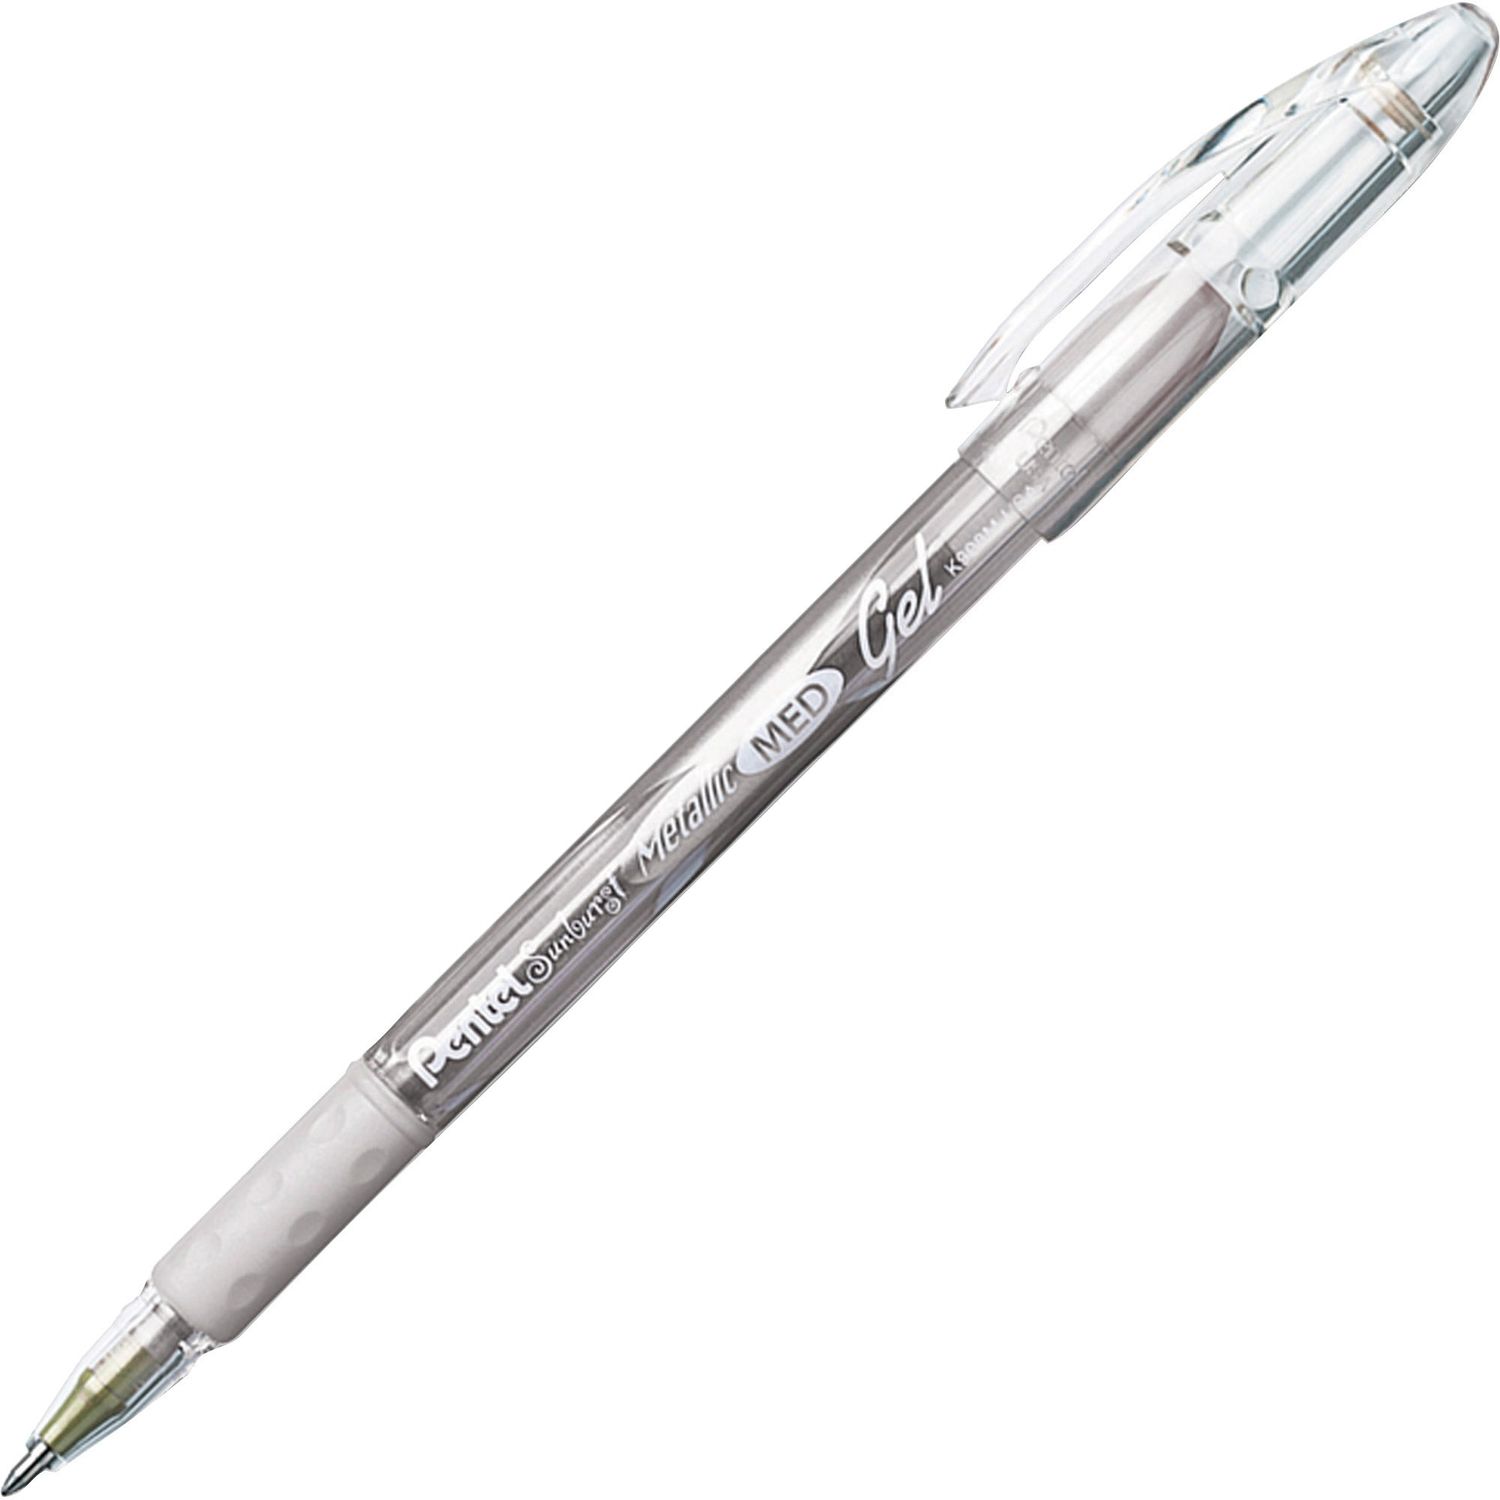 Pentel Sunburst Metallic Gel Roller Pens Medium Pen Point, 0.4 mm Pen Point Size, Silver Gel-based Ink, 1 Each